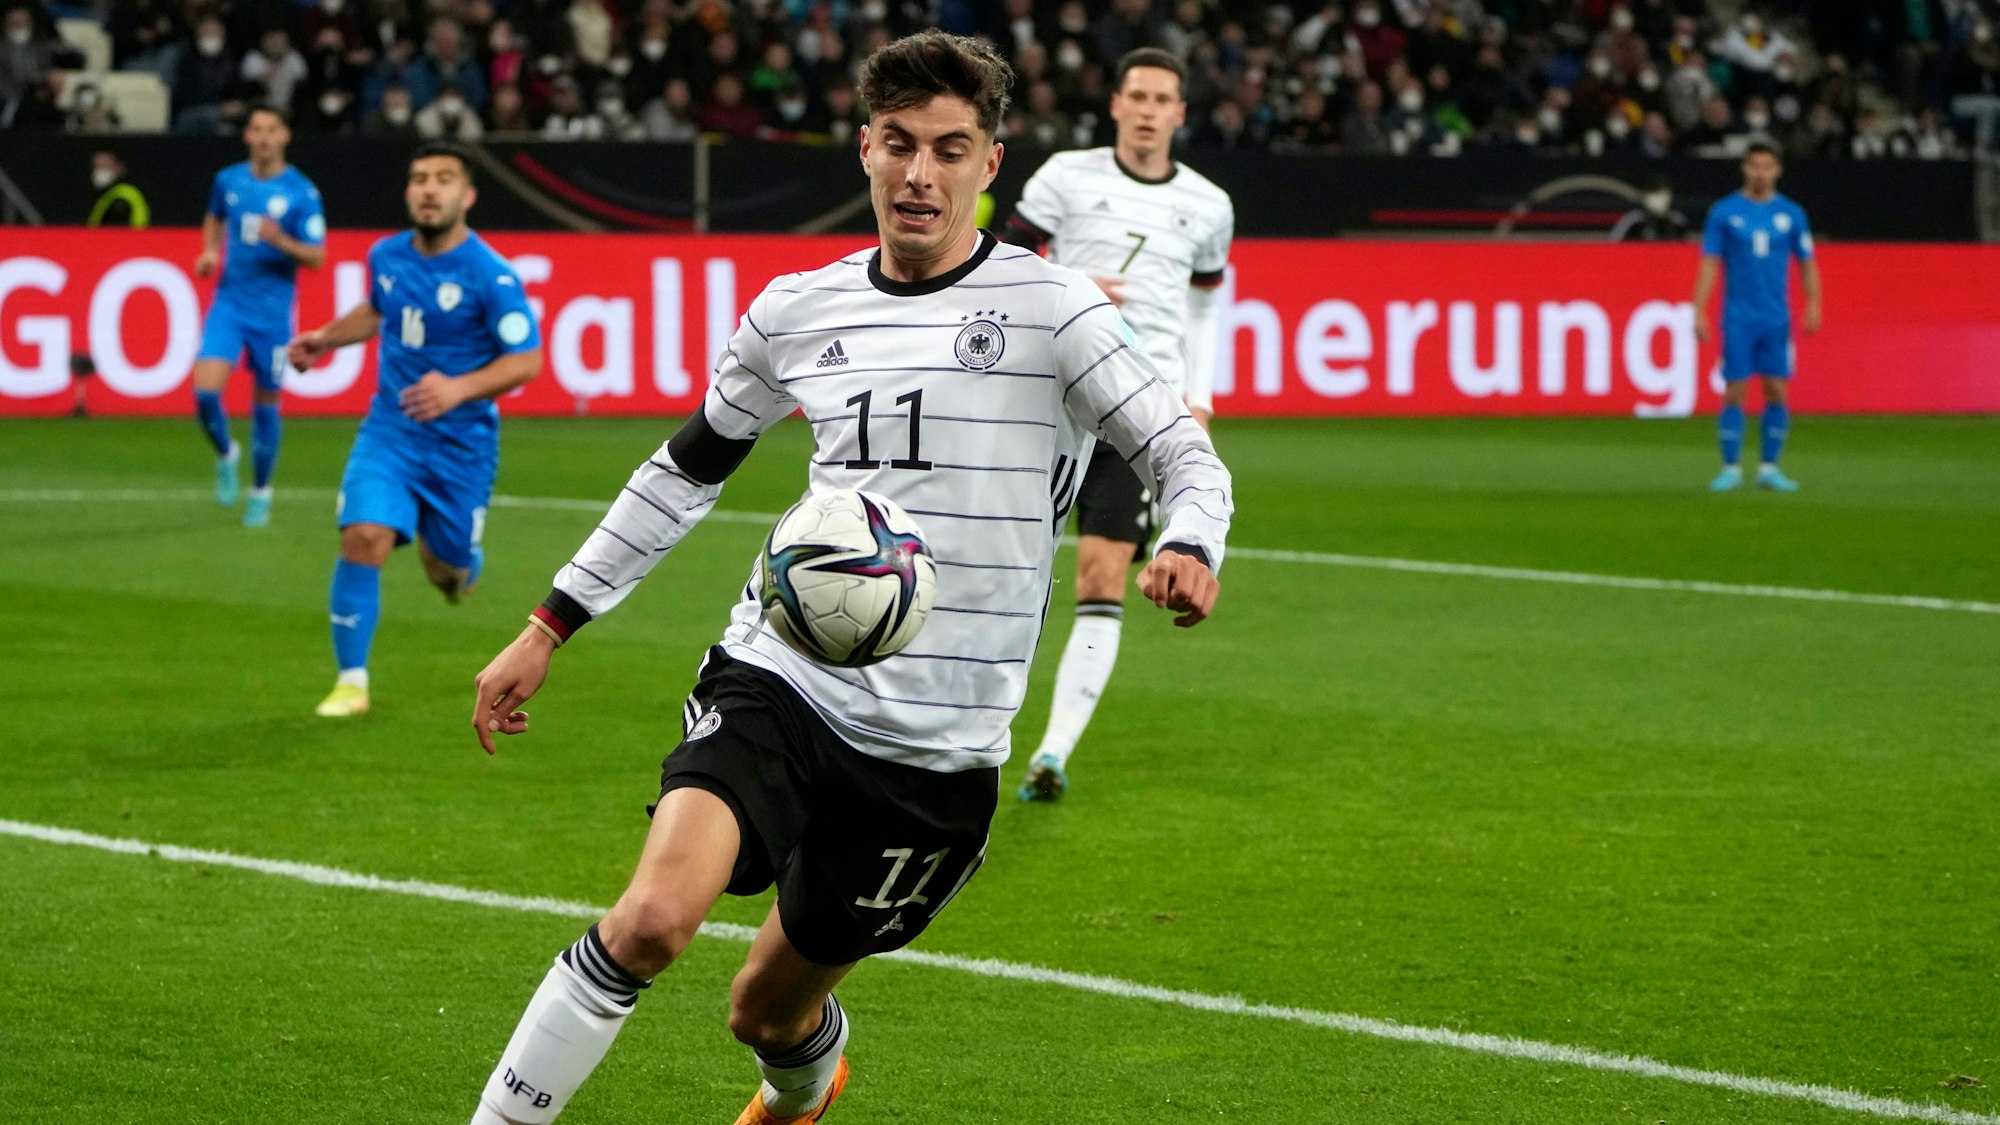 Deutschlands Spieler Kai Havertz kontrolliert den Ball während des internationalen Freundschaftsspiels zwischen Deutschland und Israel in Sinsheim.